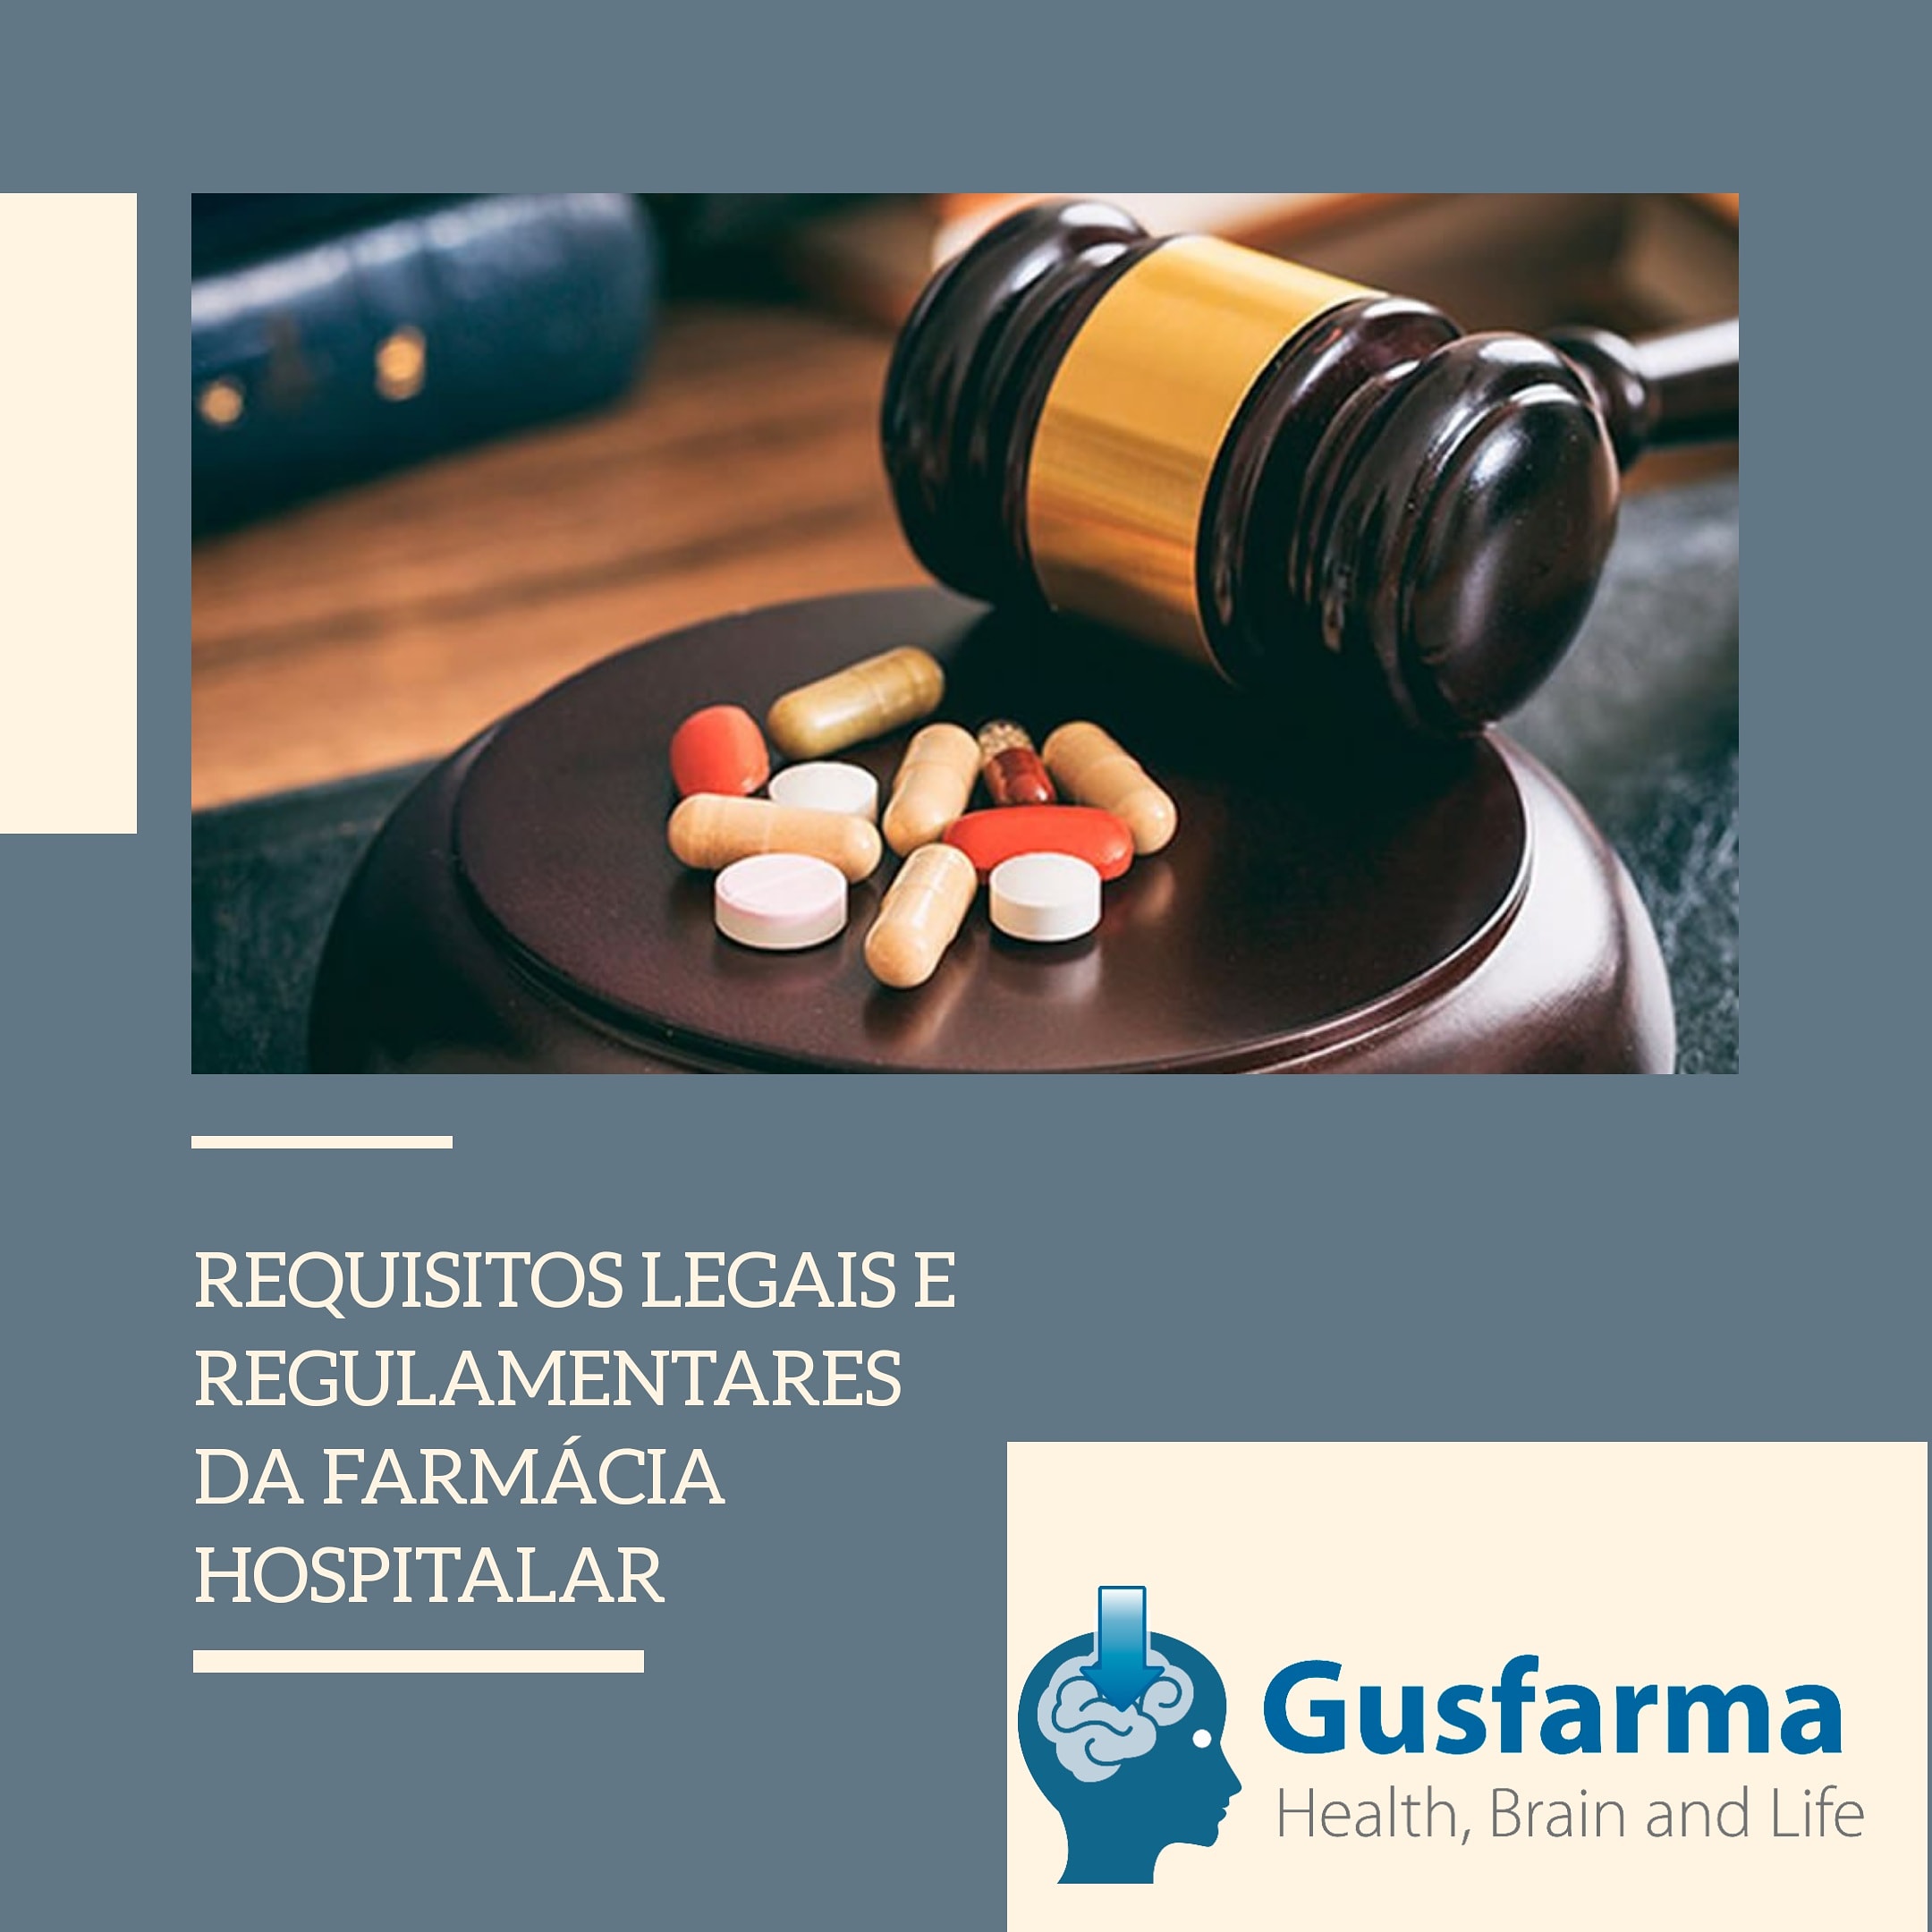 Requisitos legais e regulamentares da farmácia hospitalar